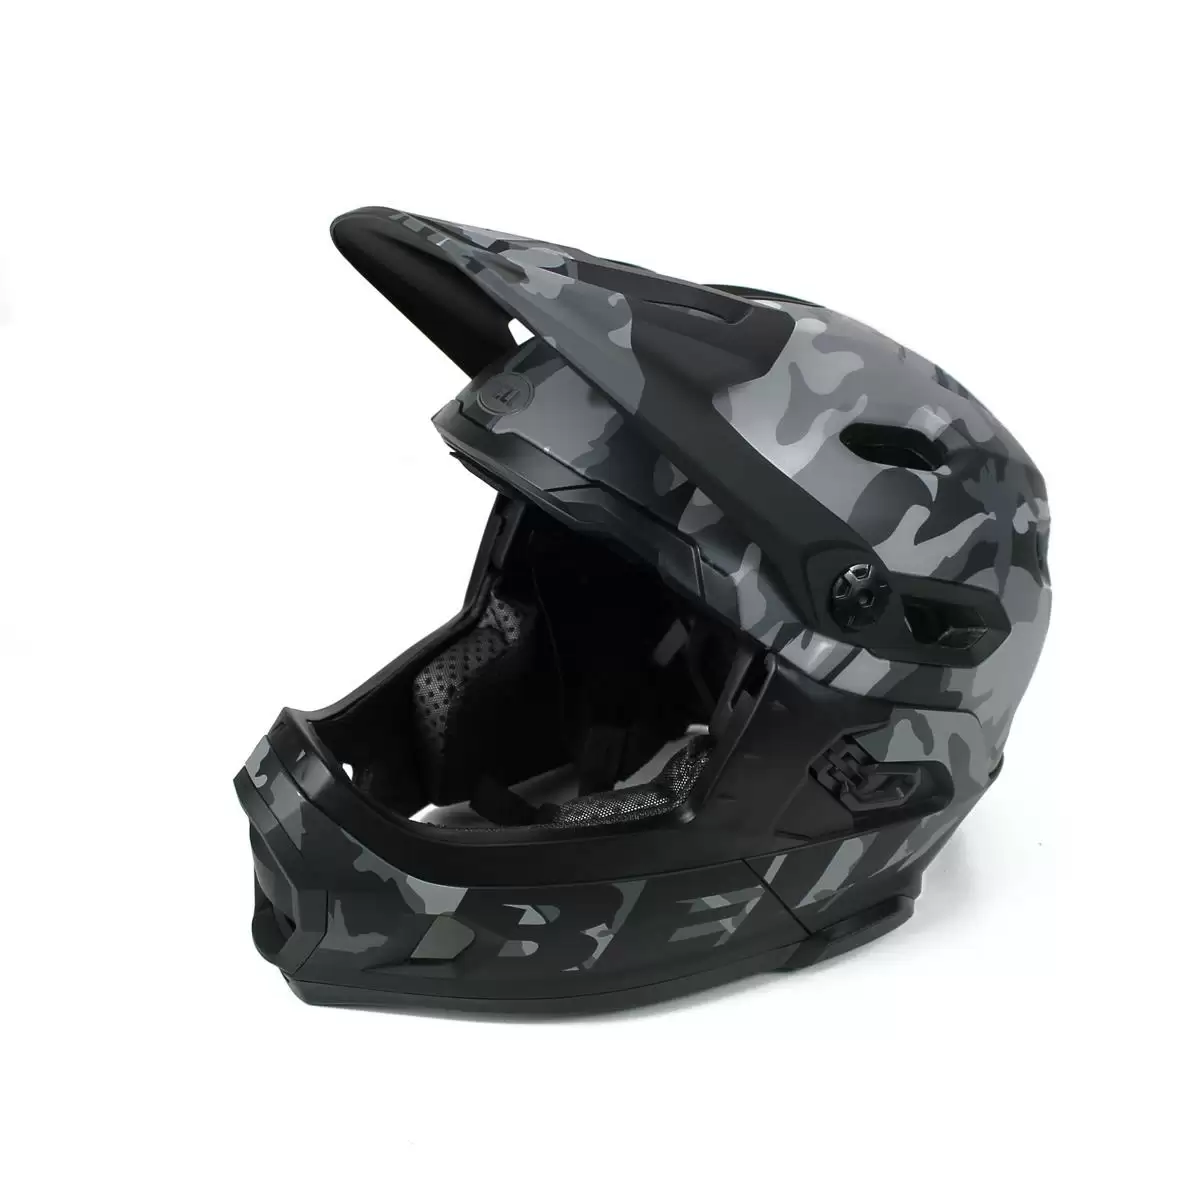 Helmet Super DH MIPS Black Camo Size M (55-59cm) #1